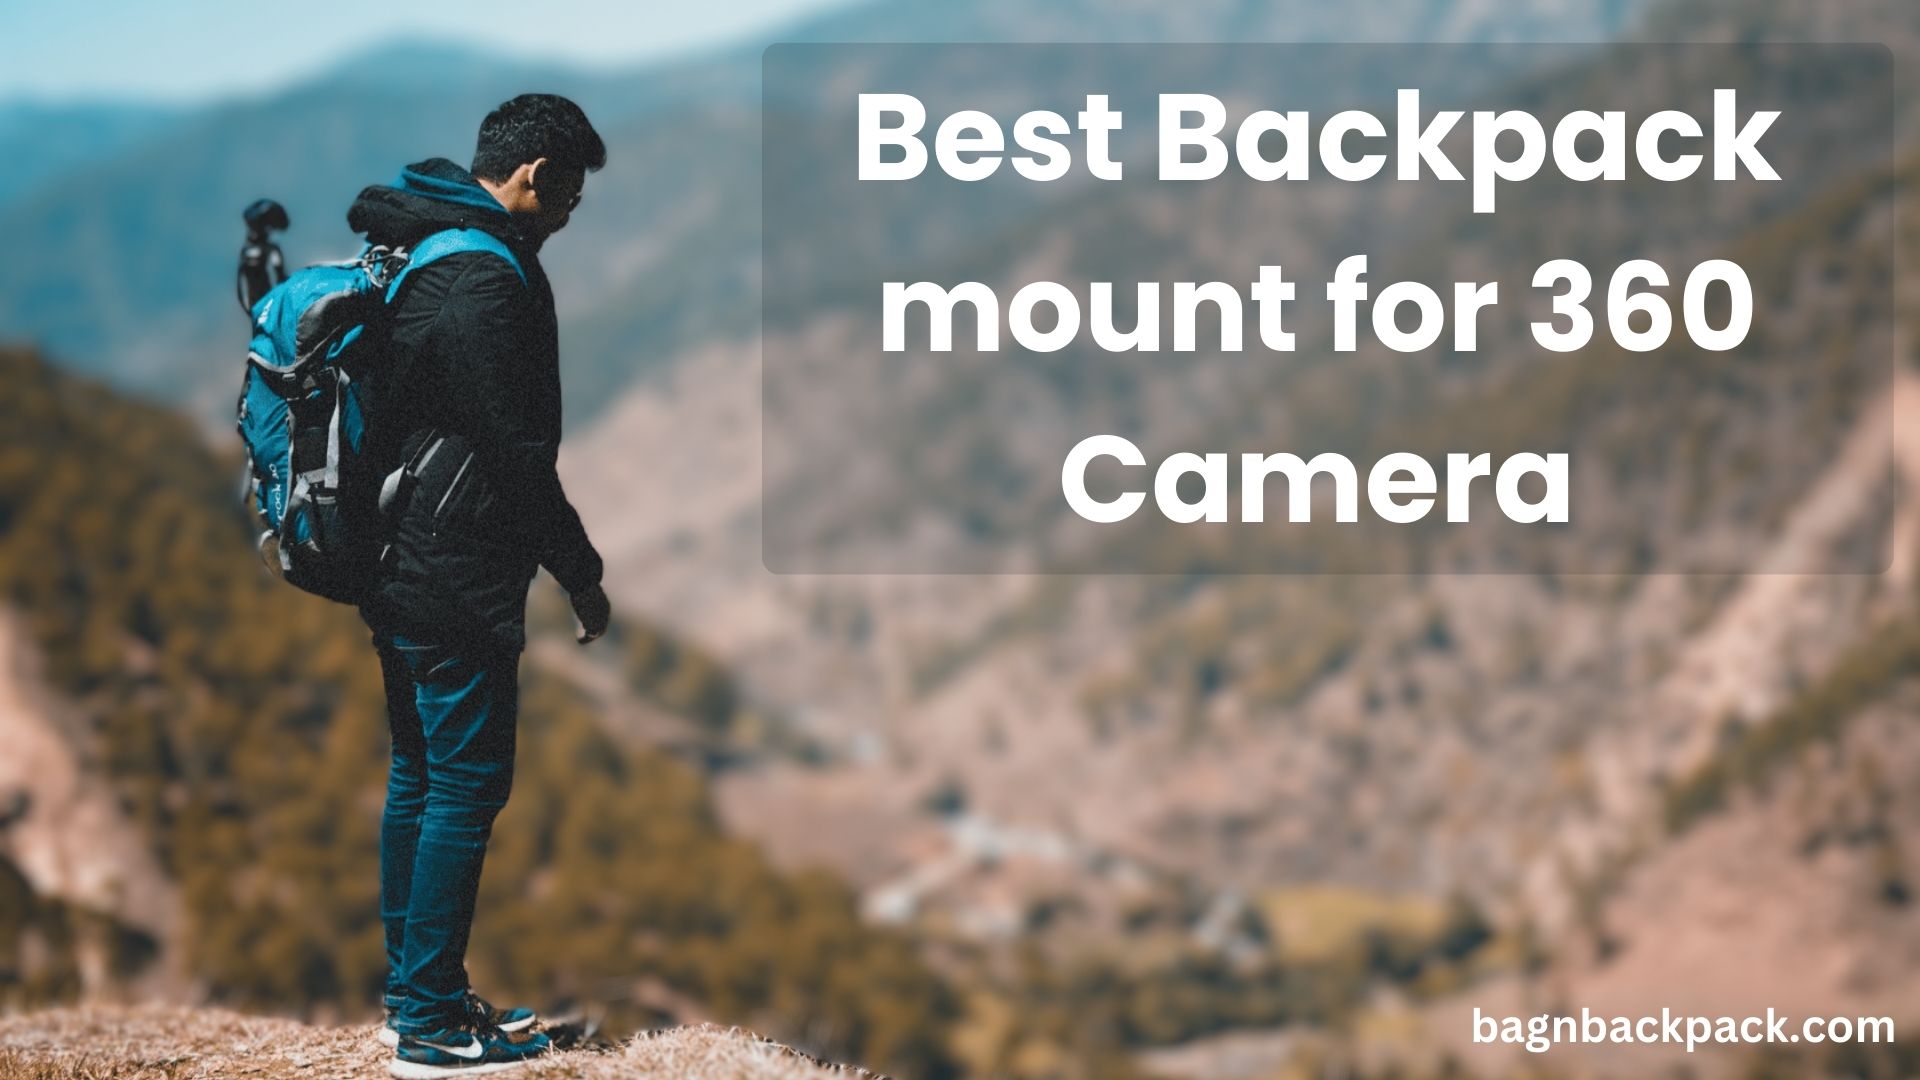 Best Backpacks for 360 Camera